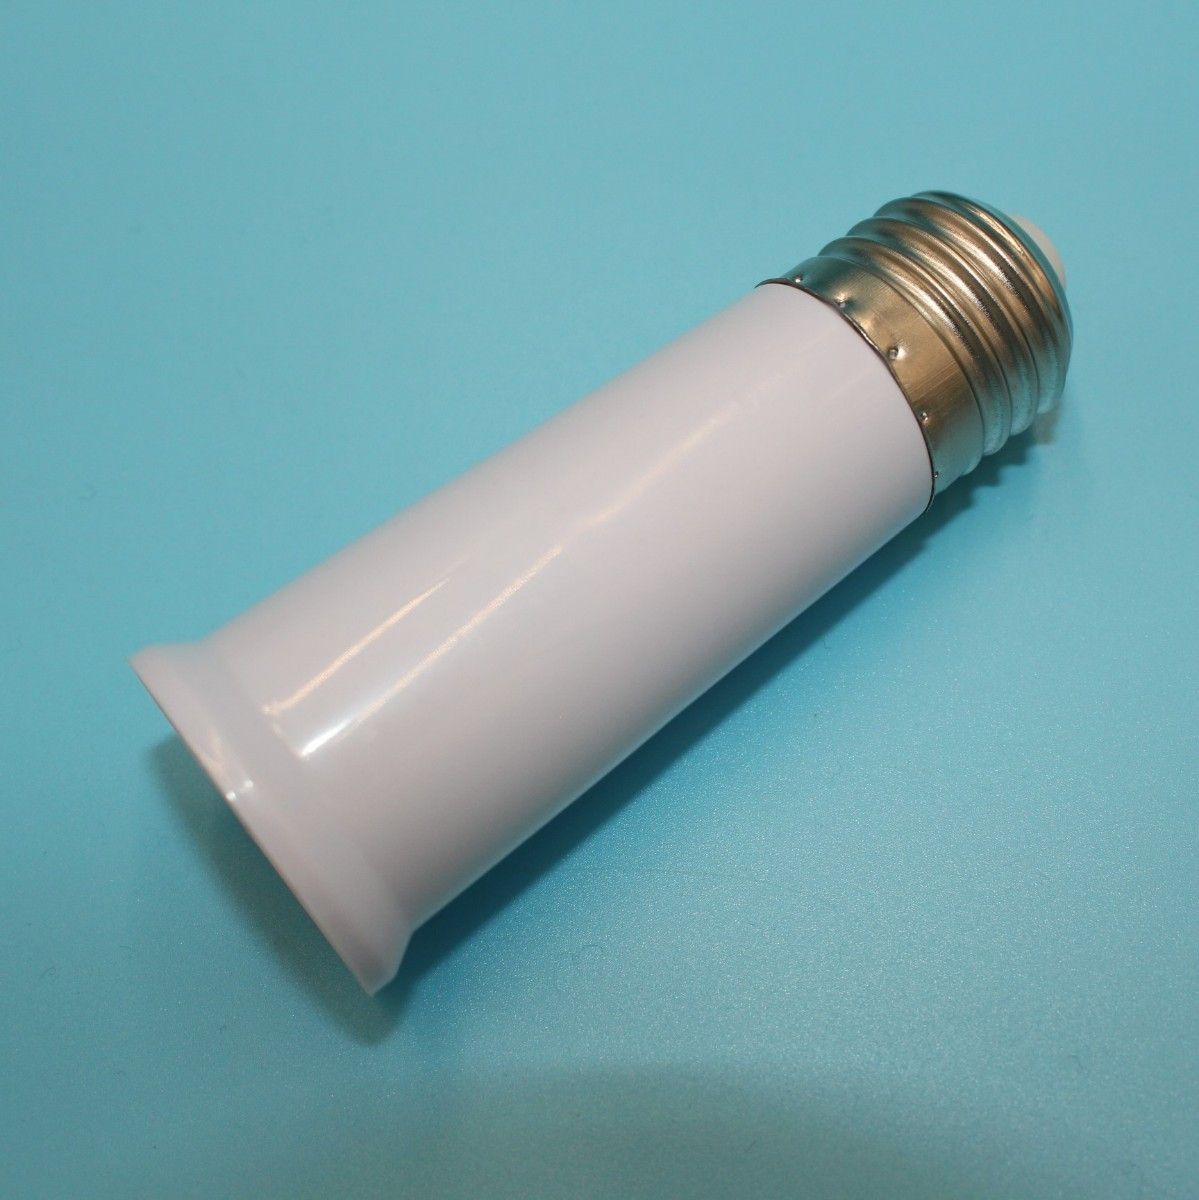 LED 電球 延長 ソケット アダプター 口金E26/E27共用 ライト用 L95mm 4個 人感センサー付きにも 耐熱 ホワイト